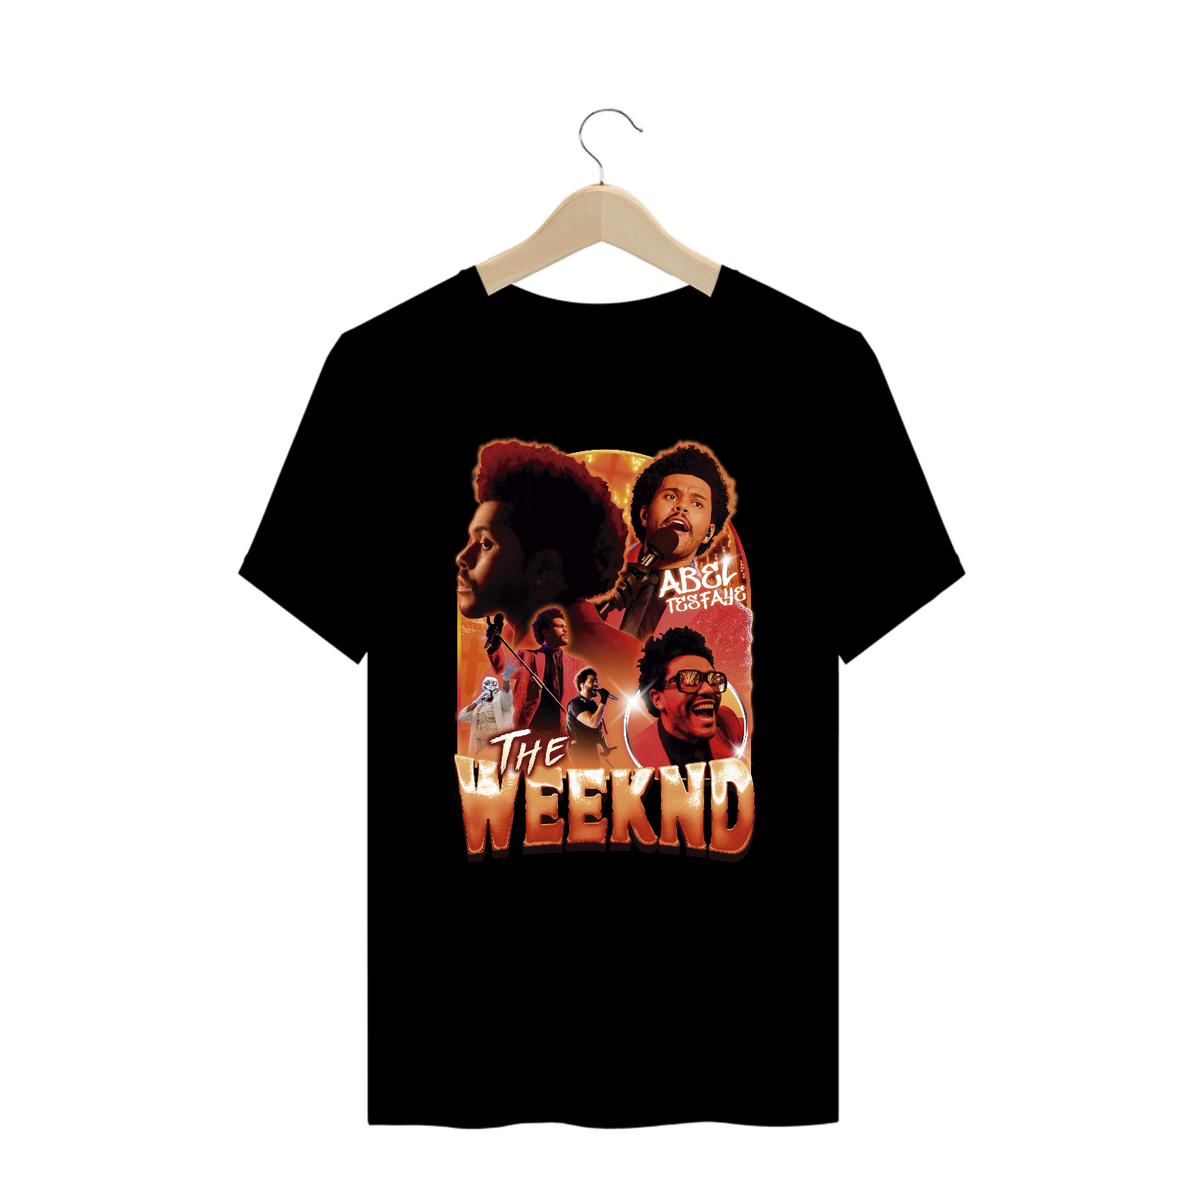 Nome do produto: The Weeknd